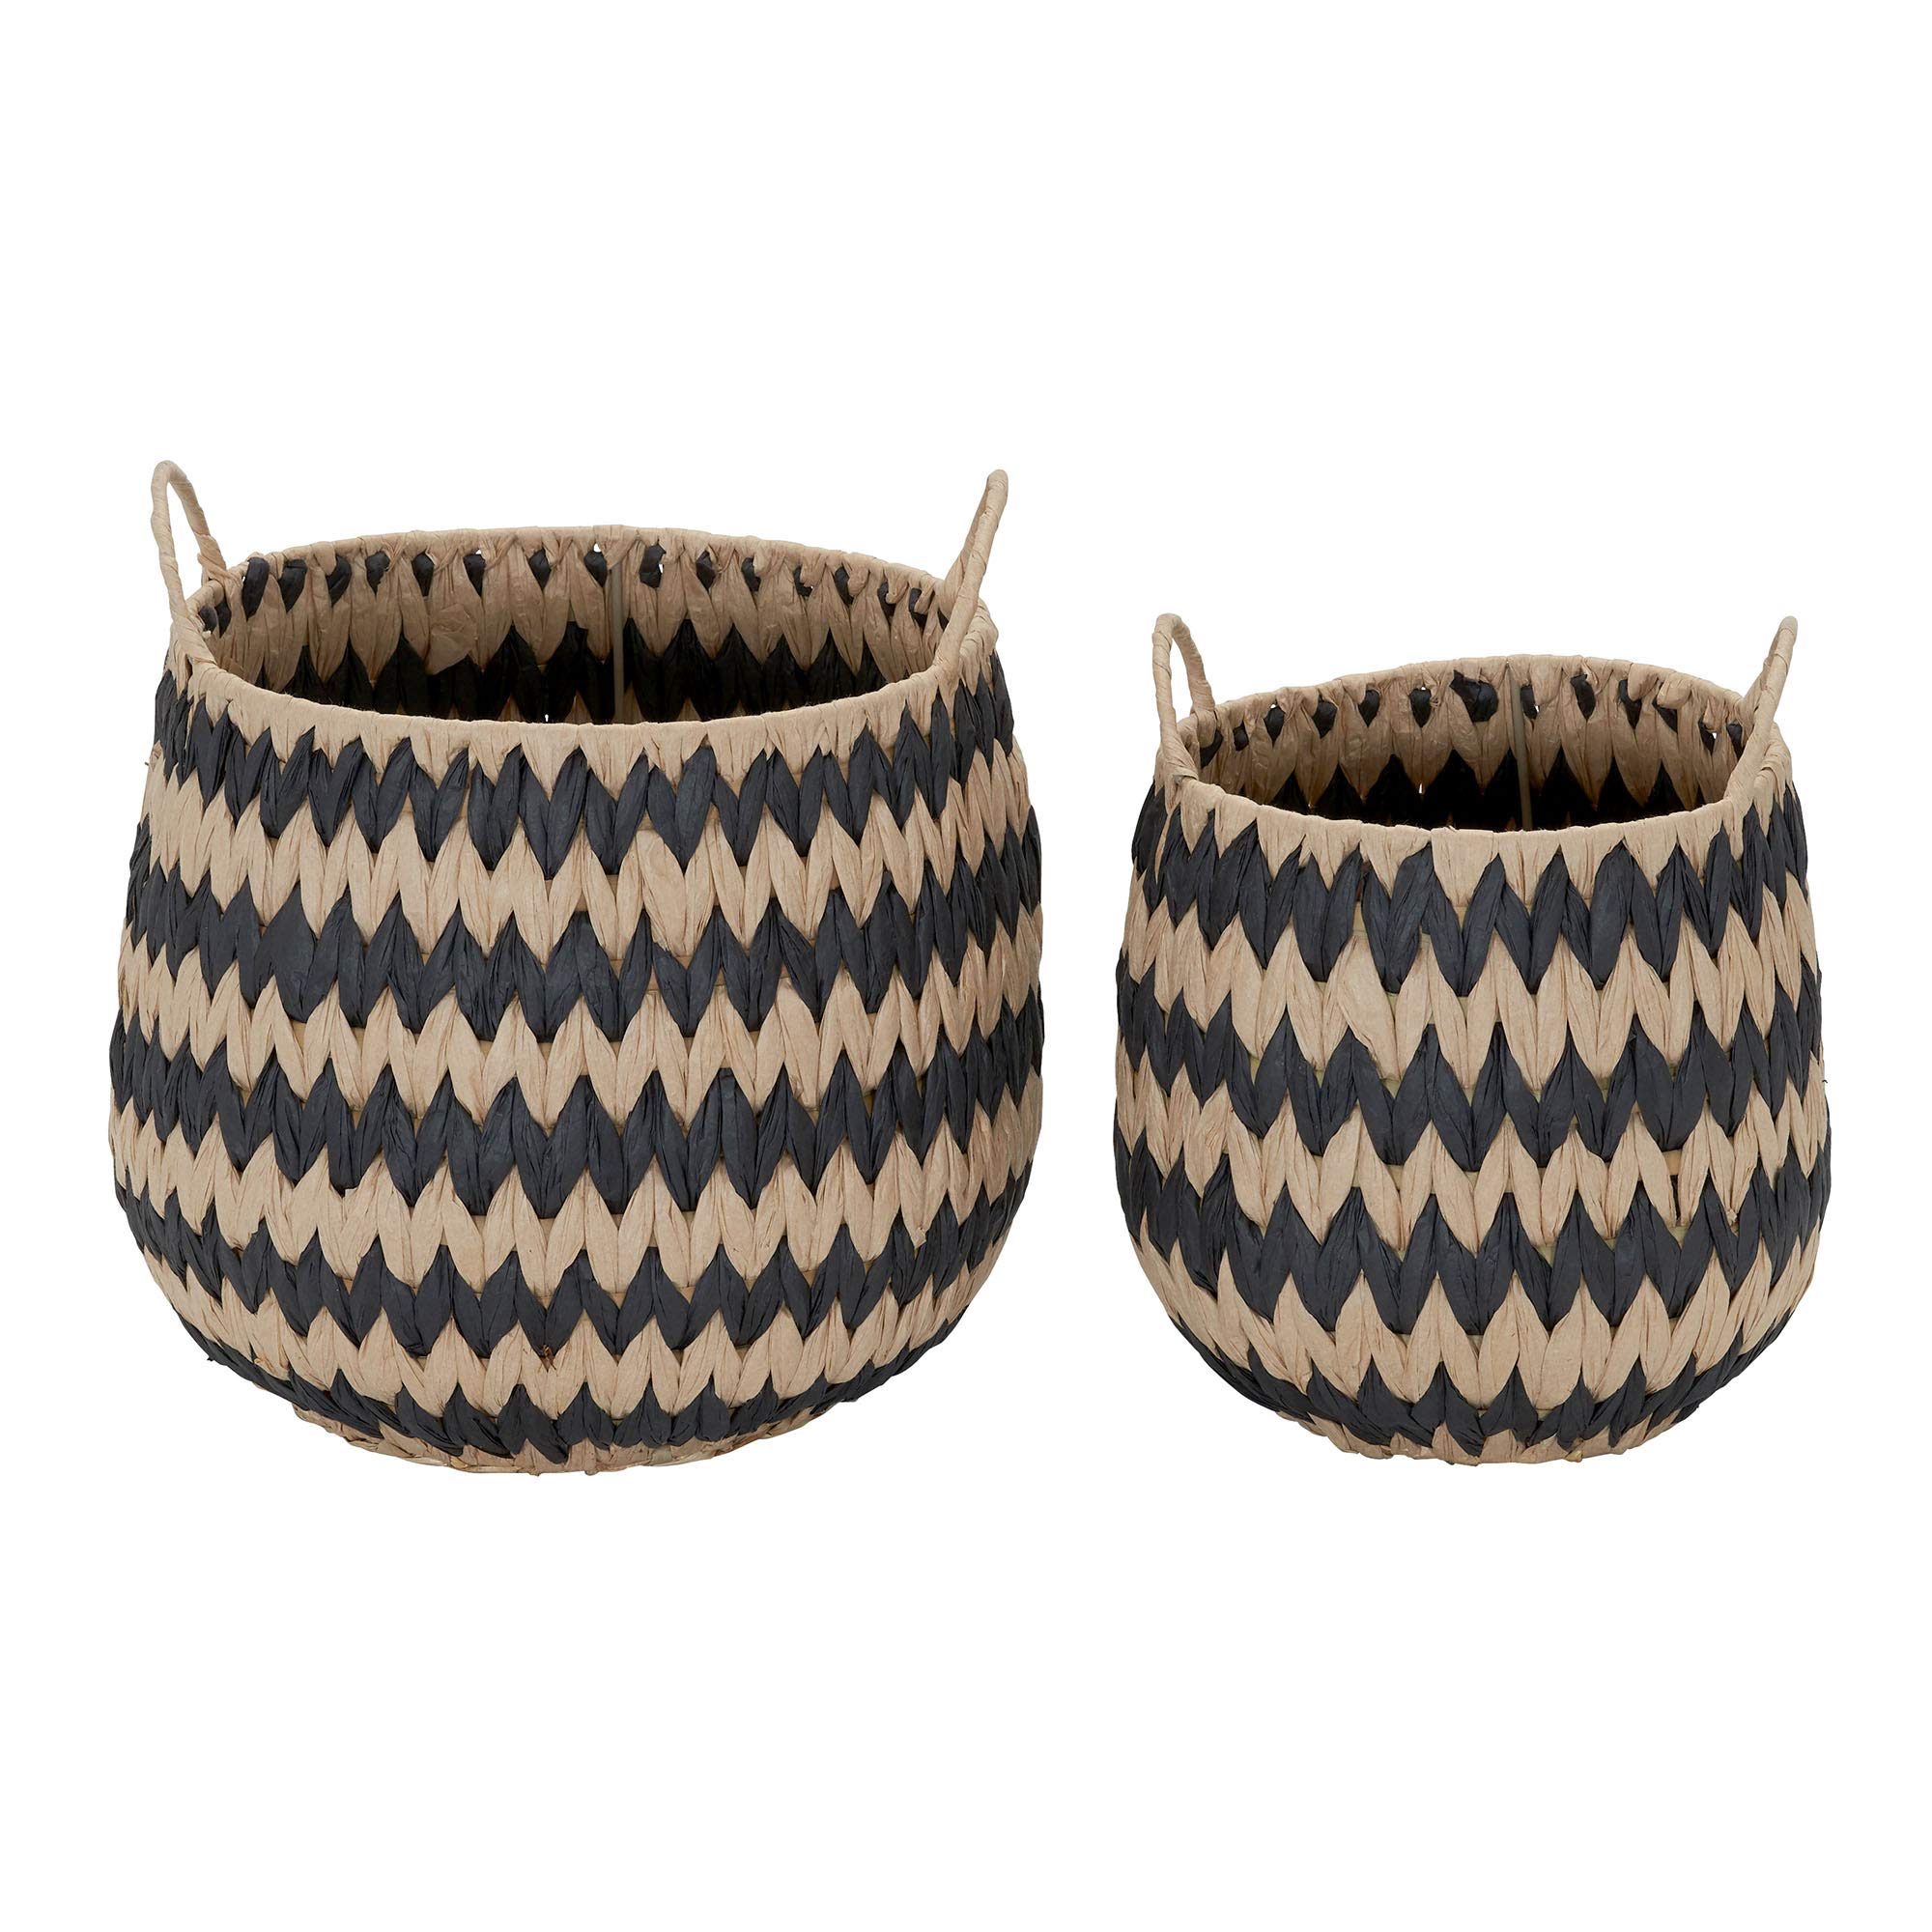 Household Essentials Brown Set of 2 Round Woven Wicker Storage Baskets with Handles | Black Stich Pattern